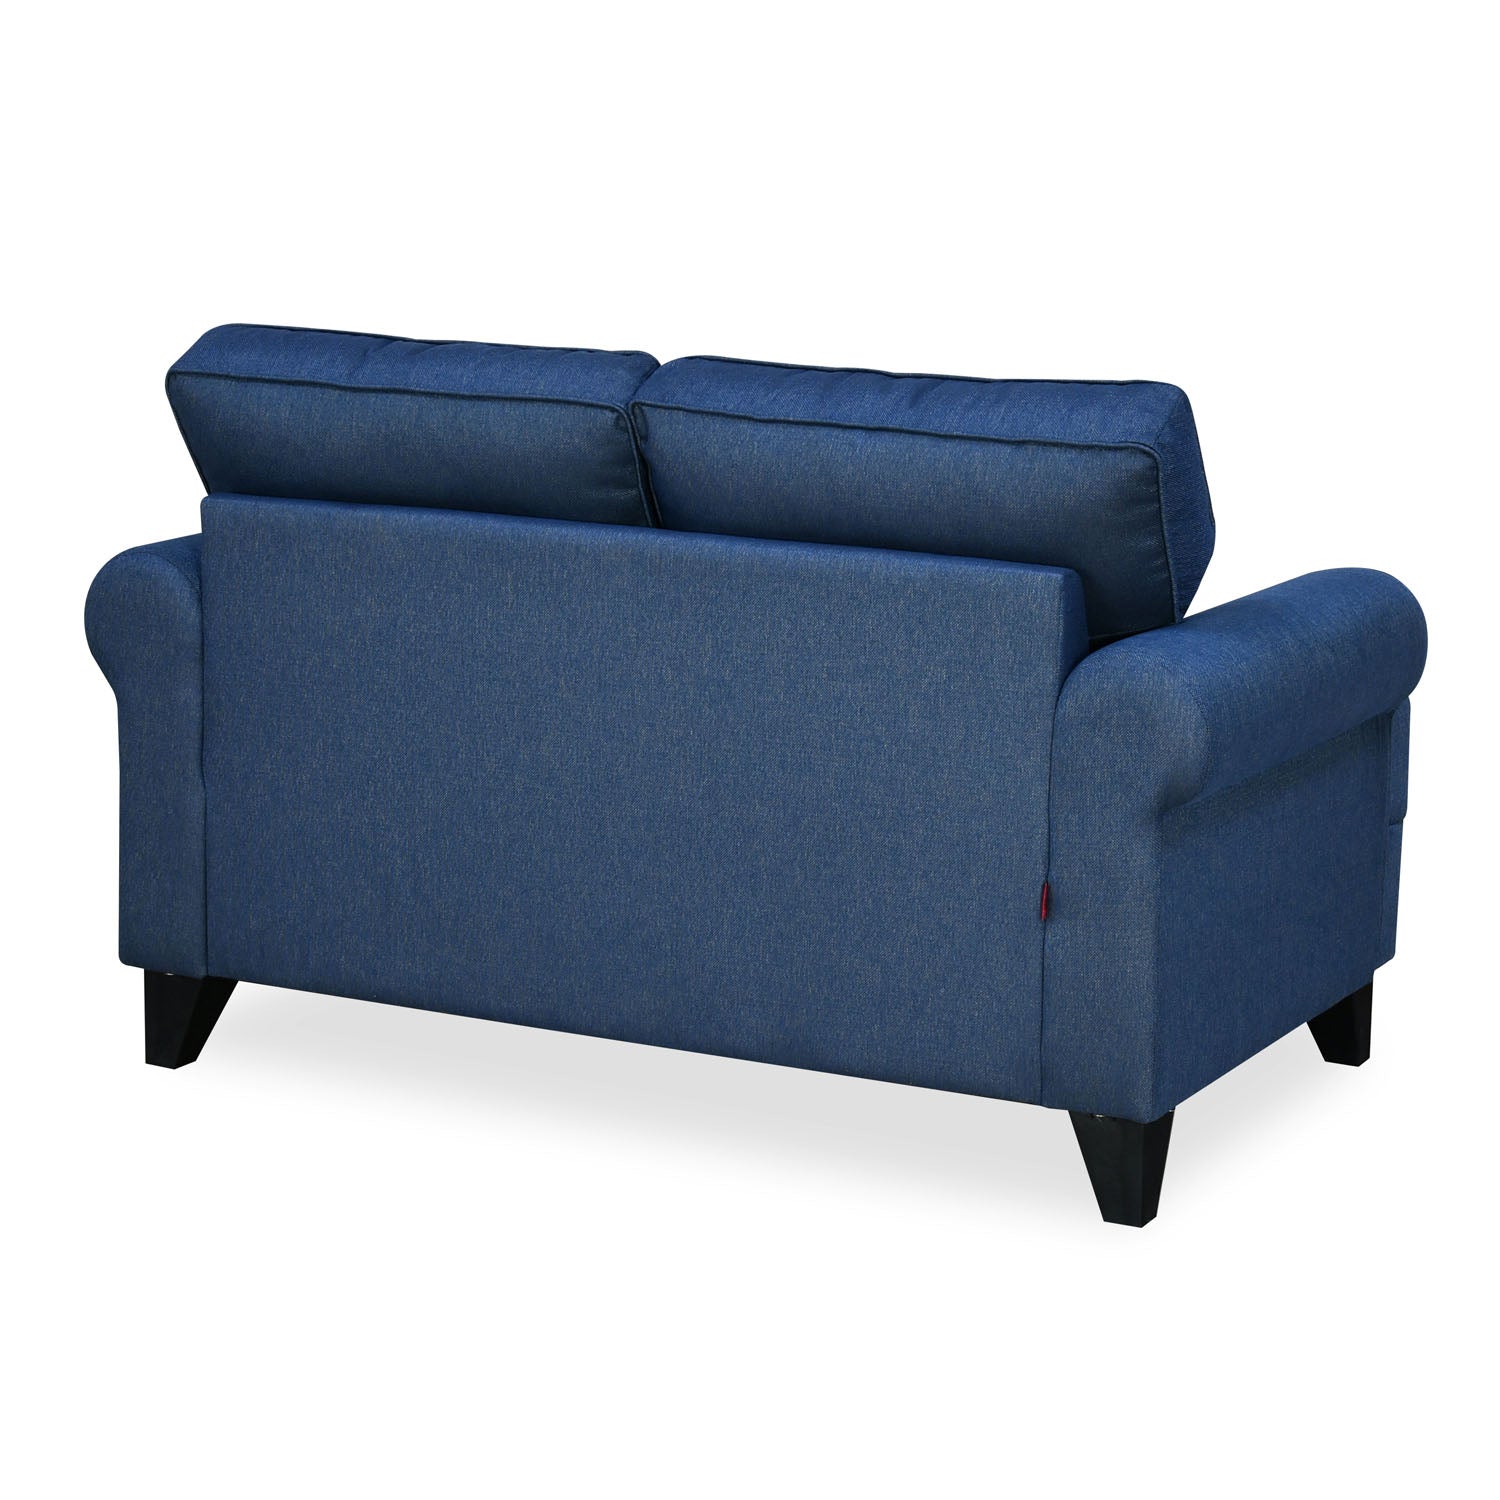 Velma Fabric 2 Seater Sofa with Cushion (Blue)